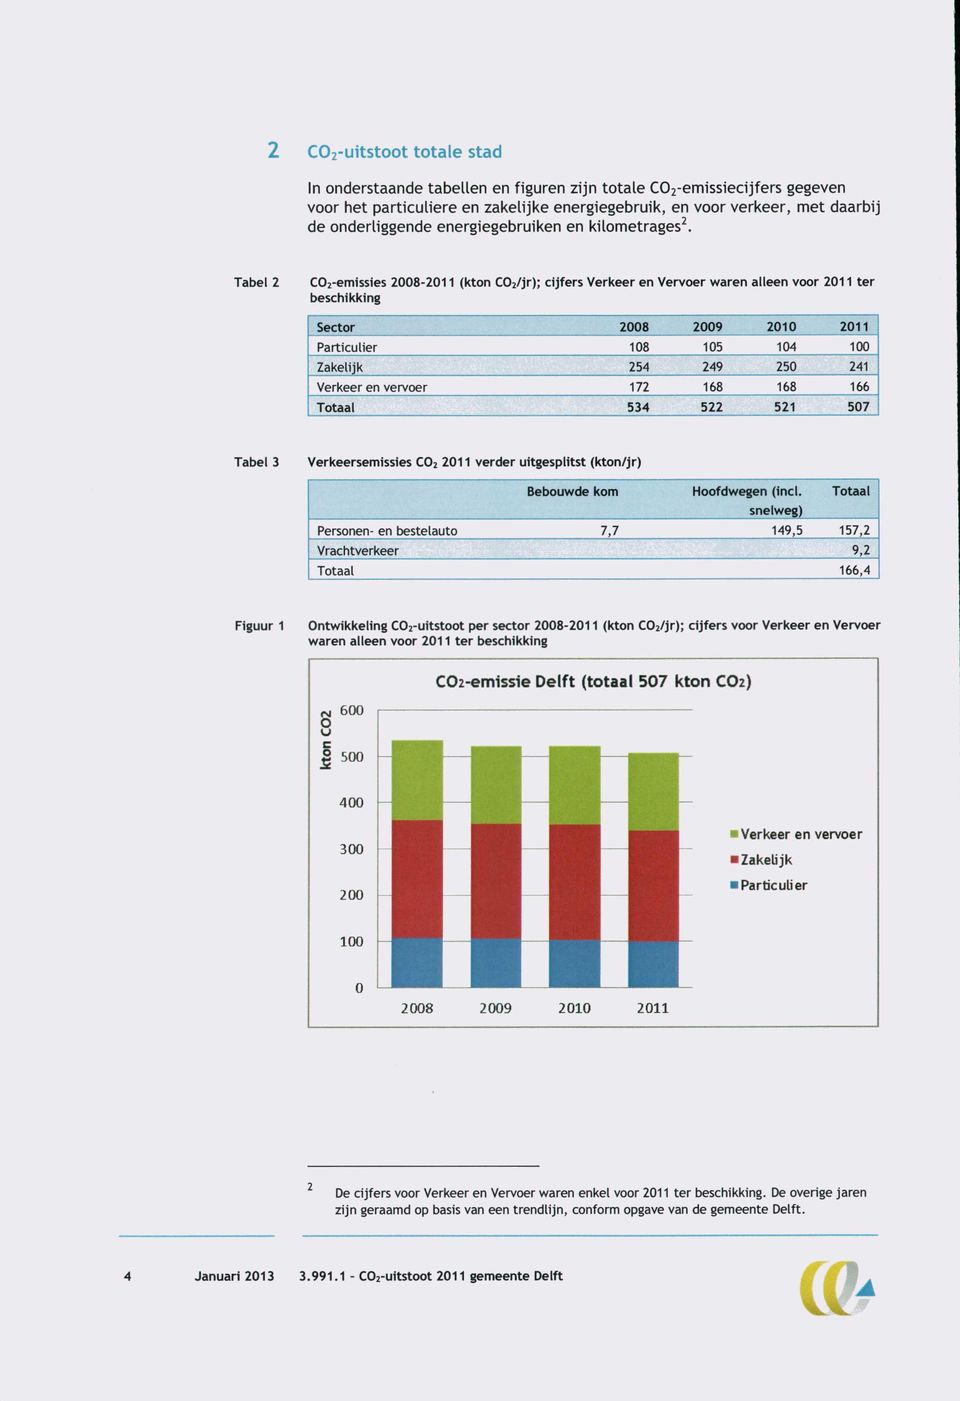 Tabel 2 C02-emissies 2008-2011 (kton COz/jr); cijfers Verkeer en Vervoer waren alleen voor 2011 ter beschikking Sector 2008 2009 2010 2011 Particulier 108 105 104 100 Zakelijk 254 249 250 241 Verkeer